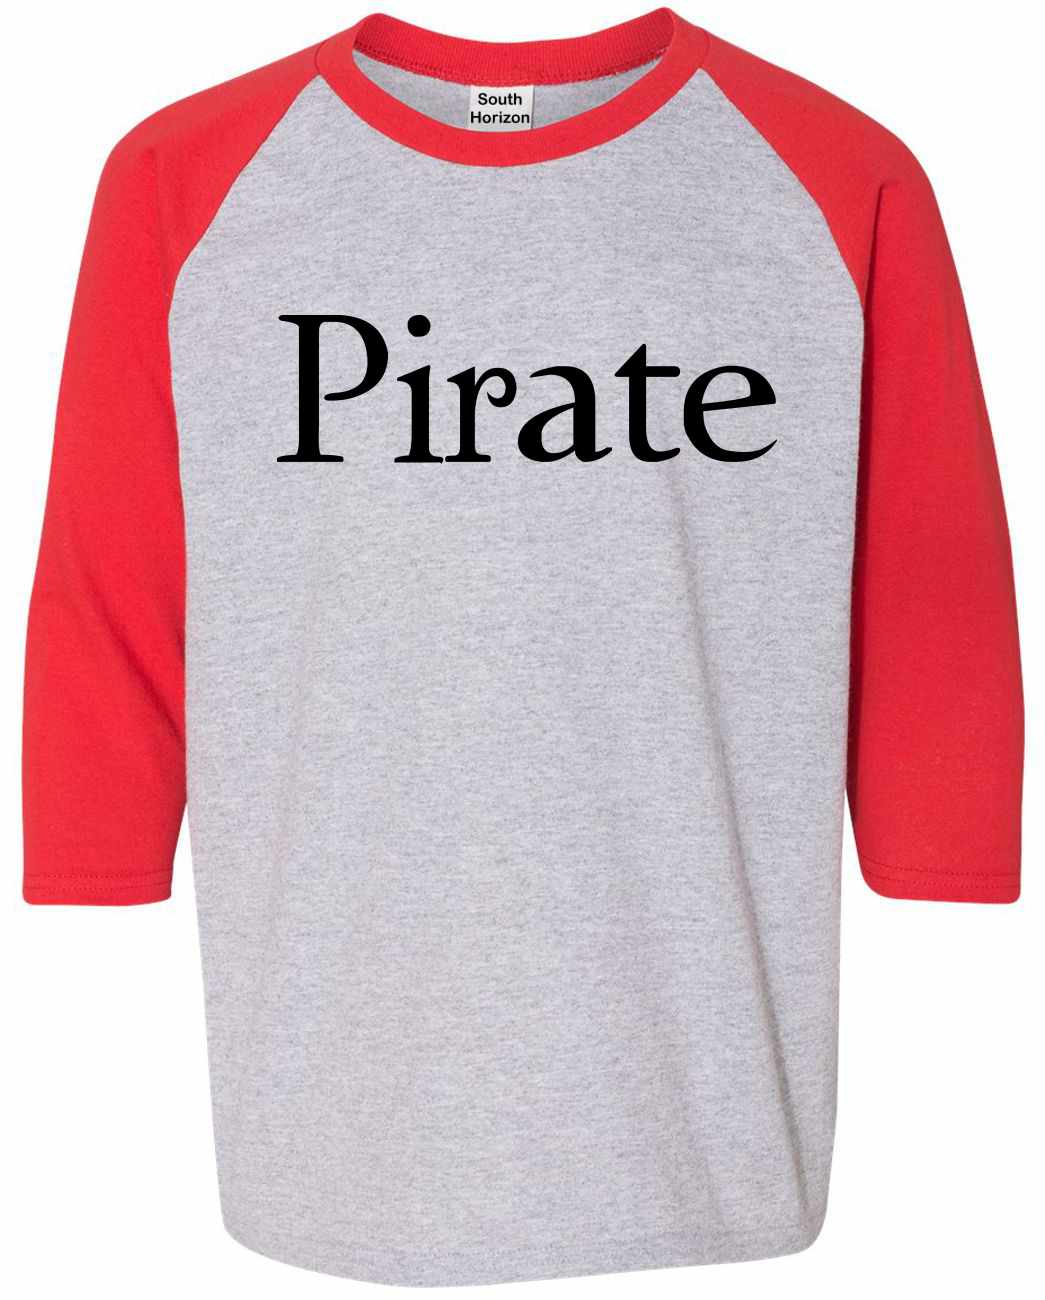 Pirate on Youth Baseball Shirt (#620-212)